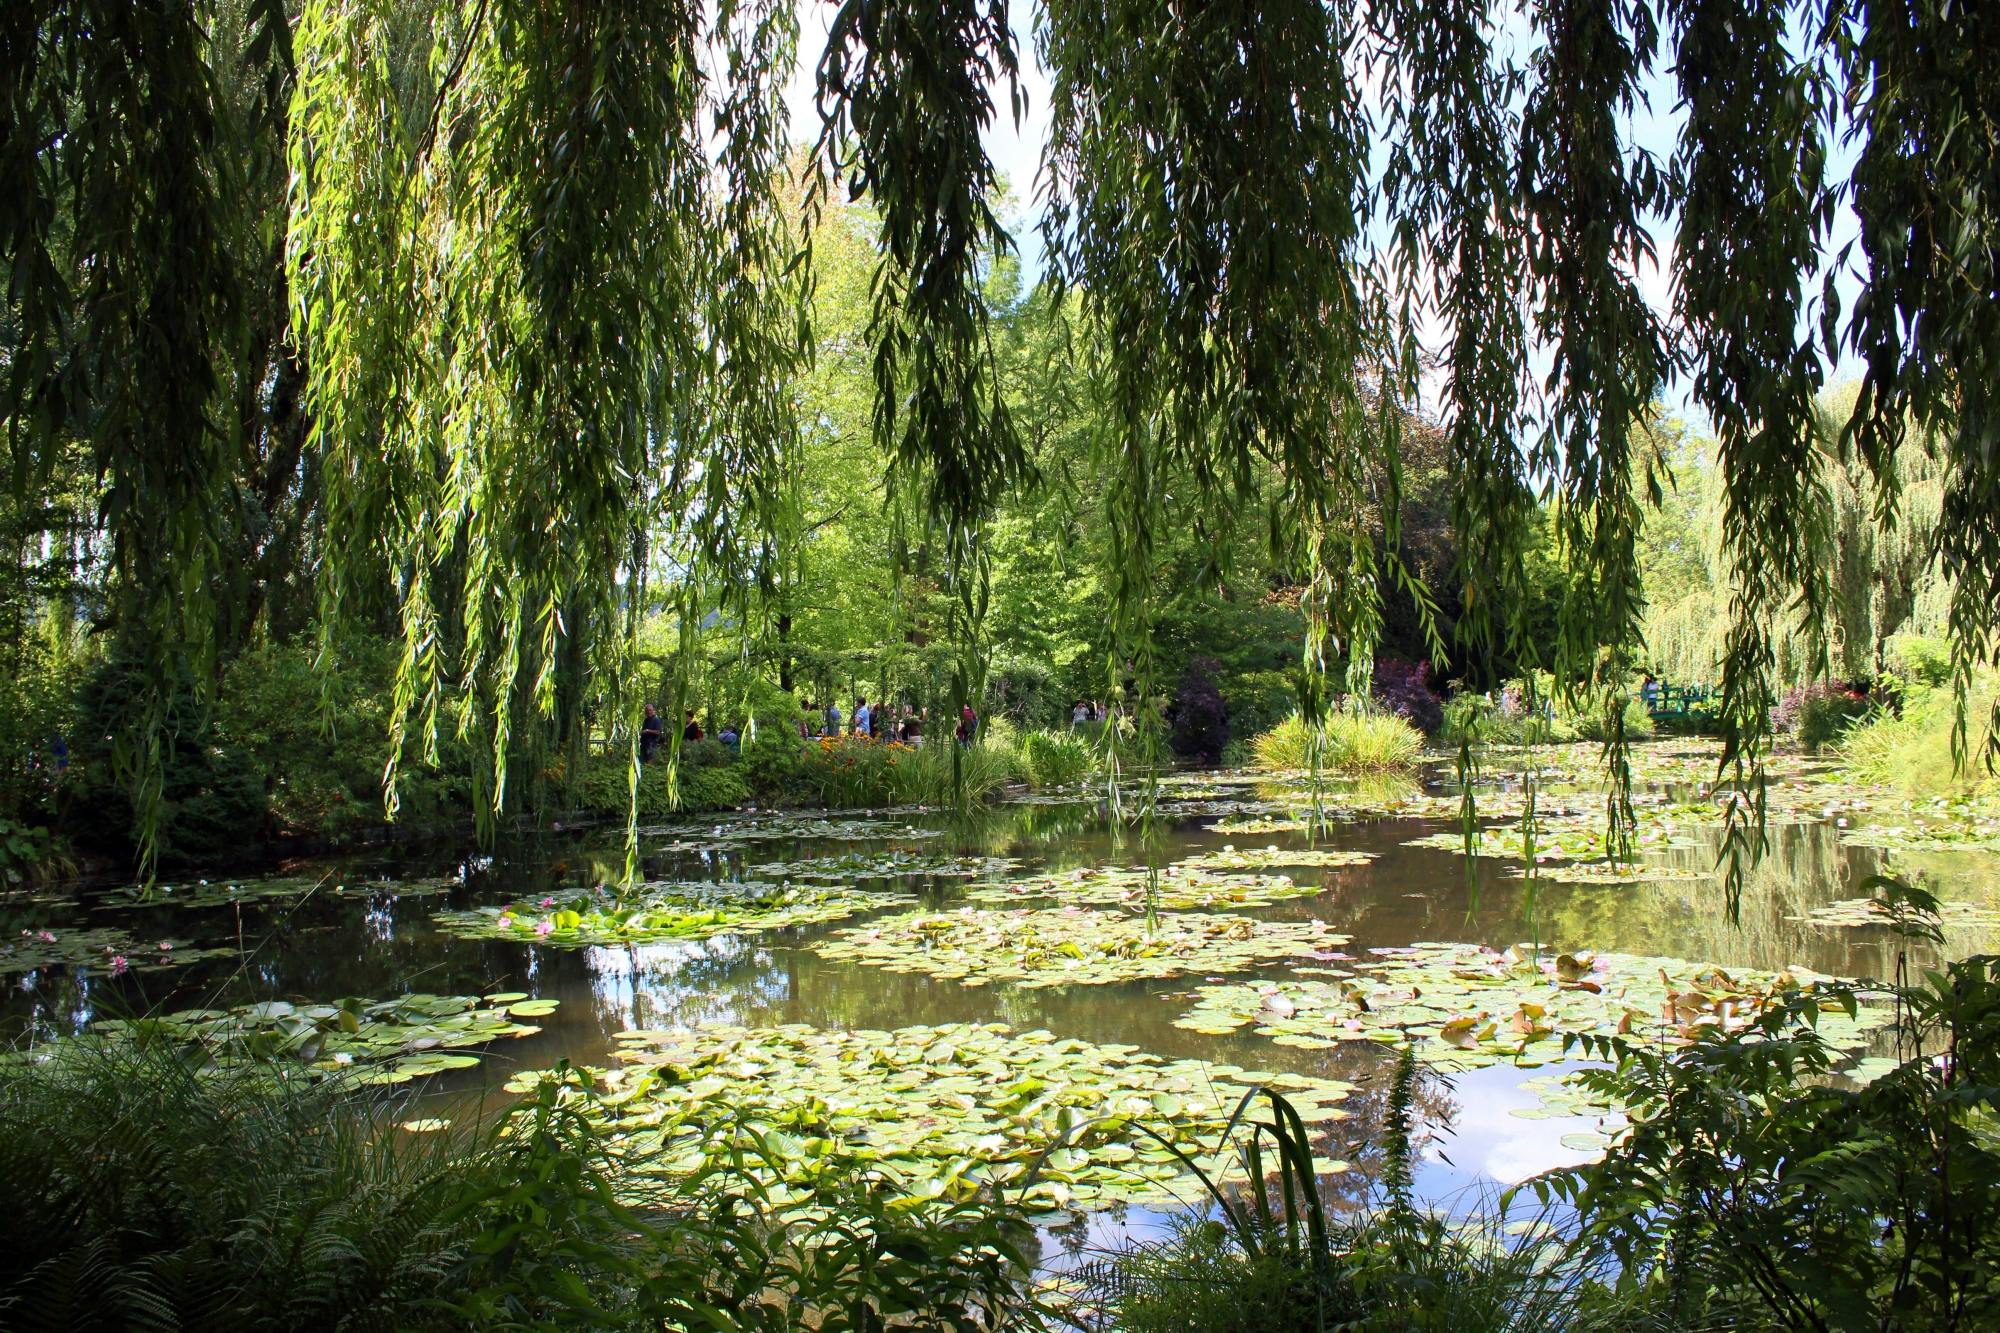 Excursion d'une demi-journée à Giverny avec la maison et les jardins de Monet au départ de Paris